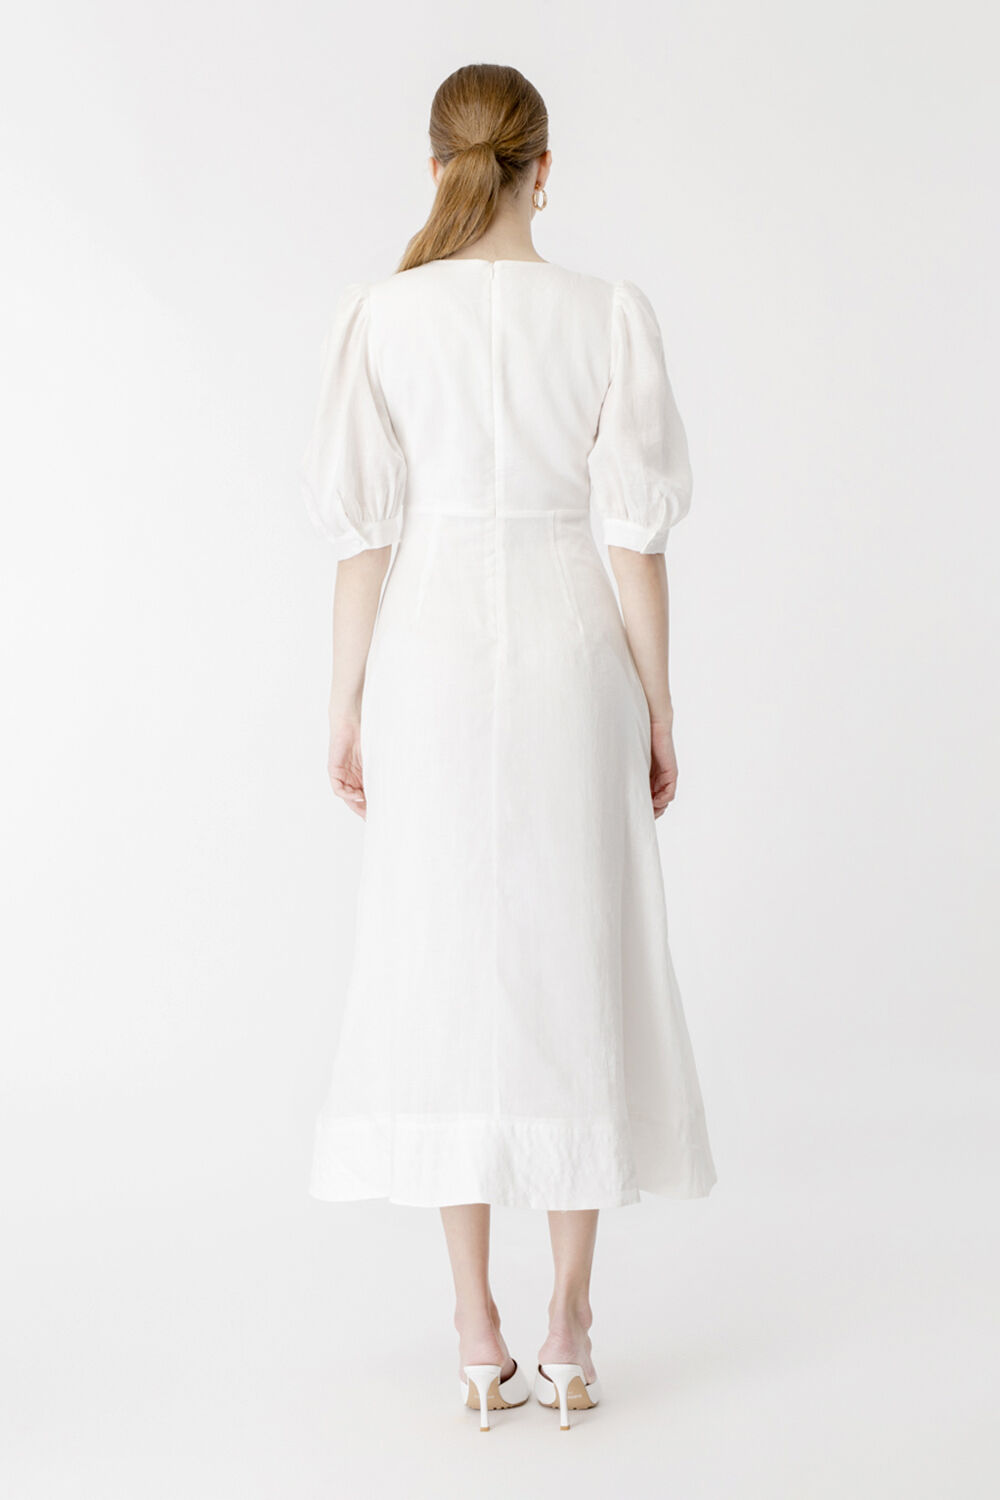 Gianna Midi Dress in Ivory | Bardot